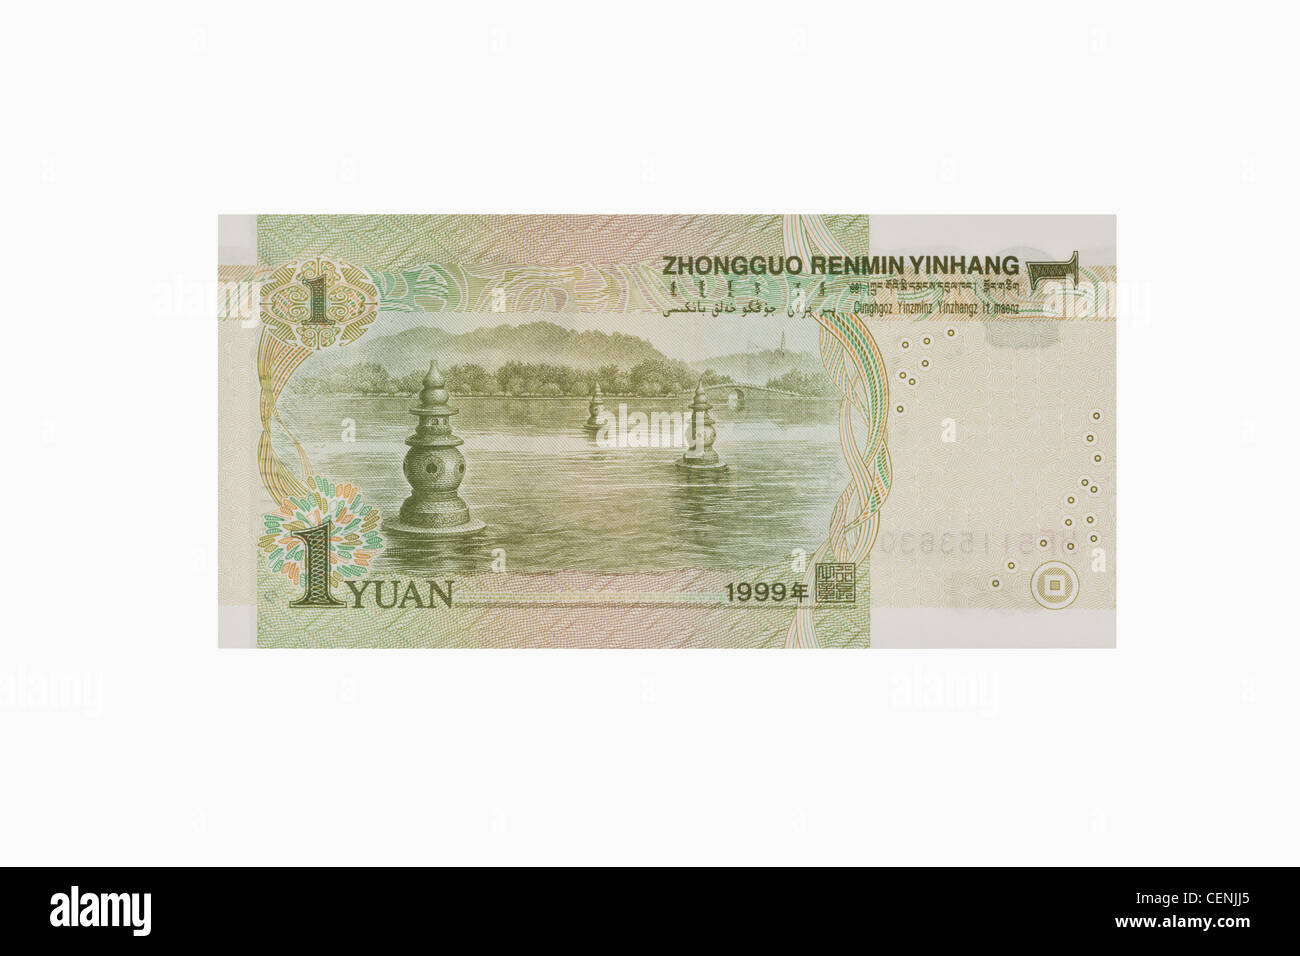 Lato posteriore del 1 yuan bill. Il renminbi, la valuta cinese, è stato introdotto nel 1949 dopo la fondazione della Repubblica popolare cinese. Foto Stock